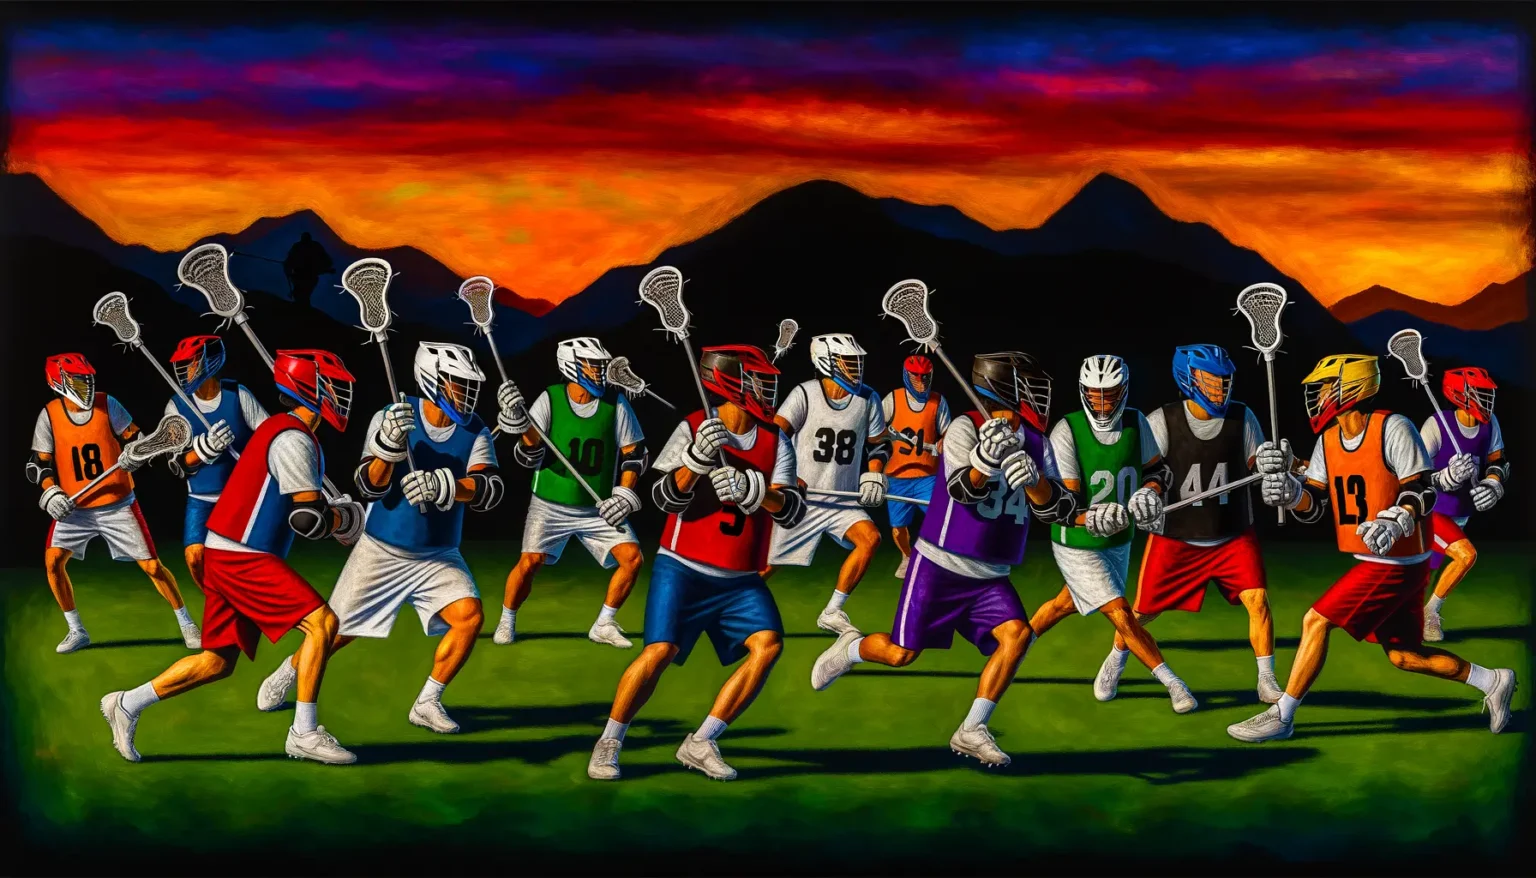 Eine Gruppe von Lacrosse-Spielern in verschiedenen Trikots rennt energisch über ein Spielfeld mit Schlägern in der Hand gegen einen Hintergrund eines dramatischen Himmels mit leuchtenden orange-roten Farben über dunklen Bergen im Sonnenuntergang.